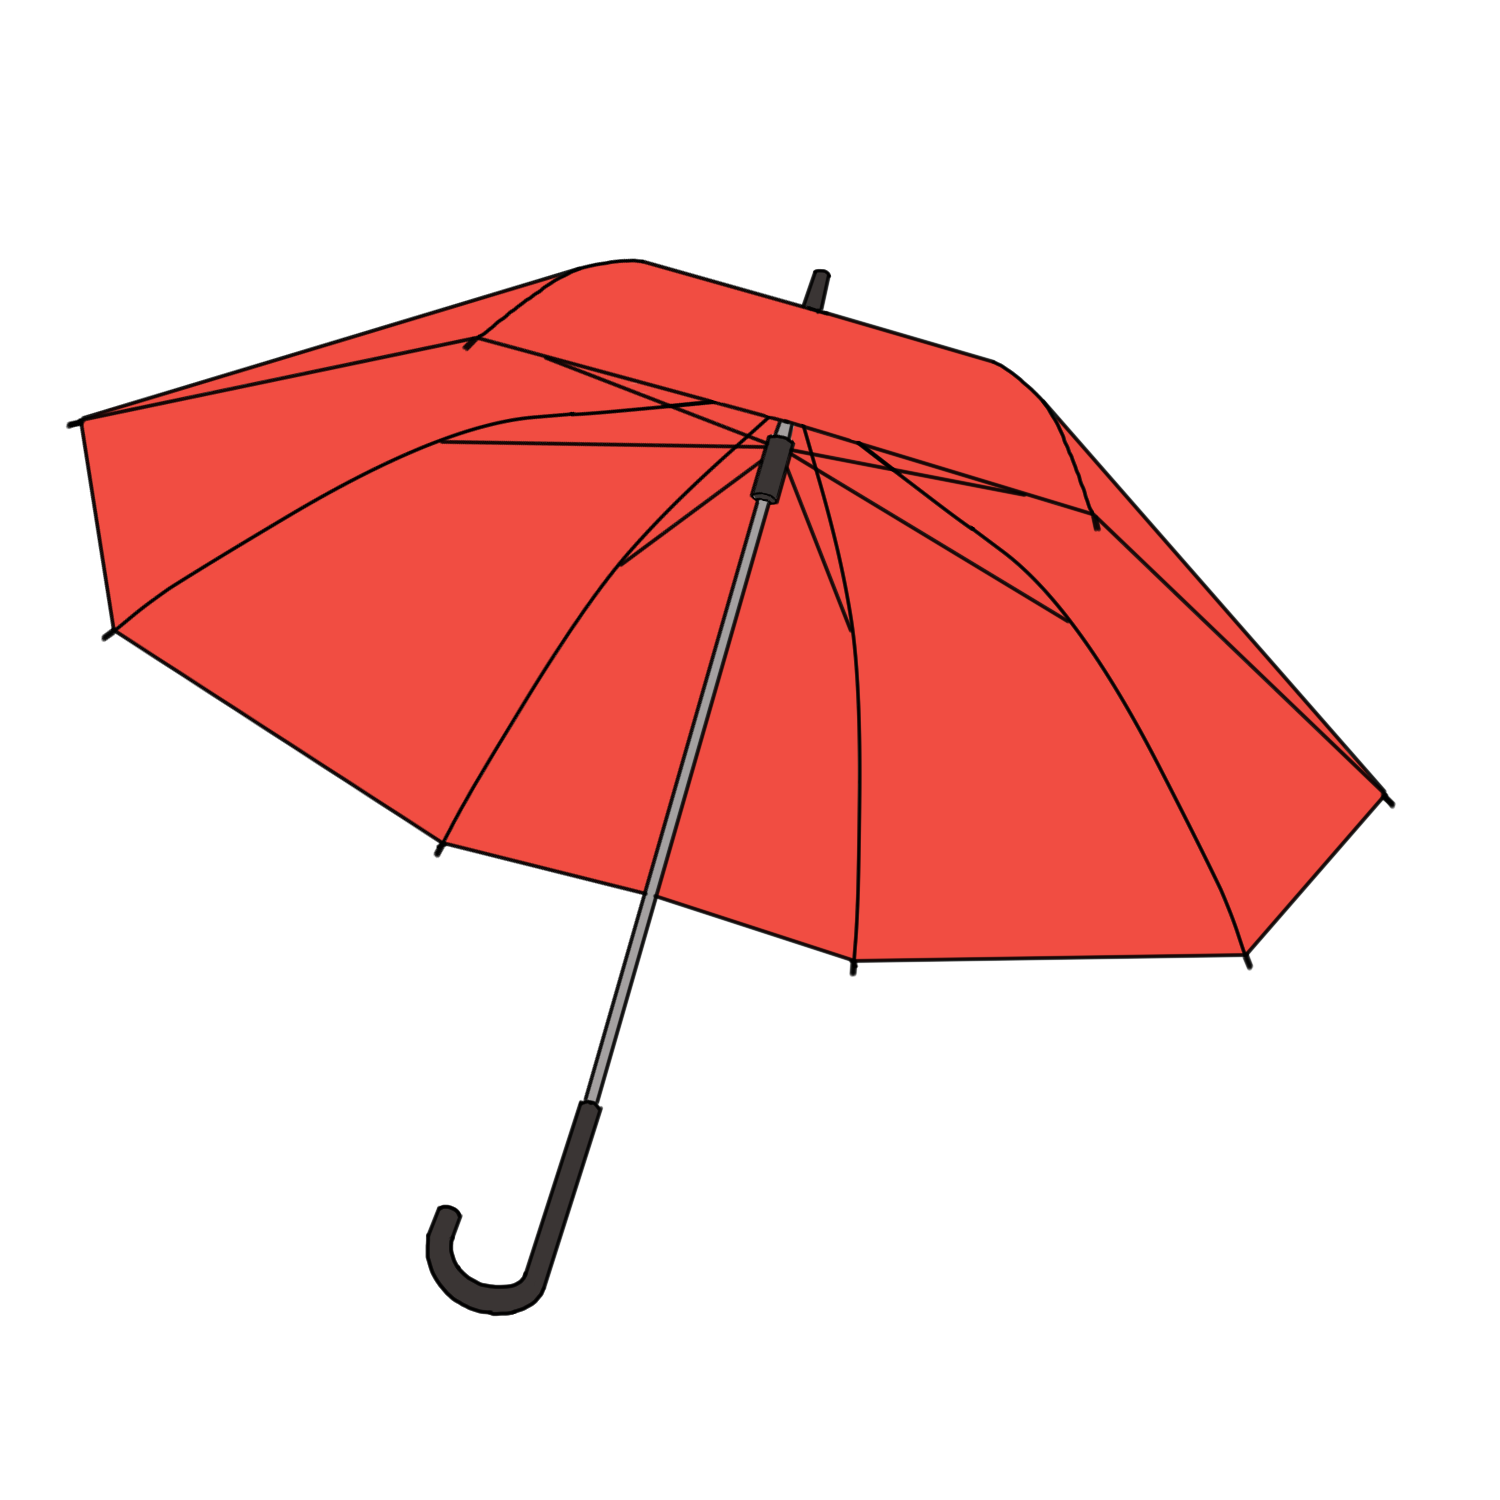 赤い傘の無料イラスト素材